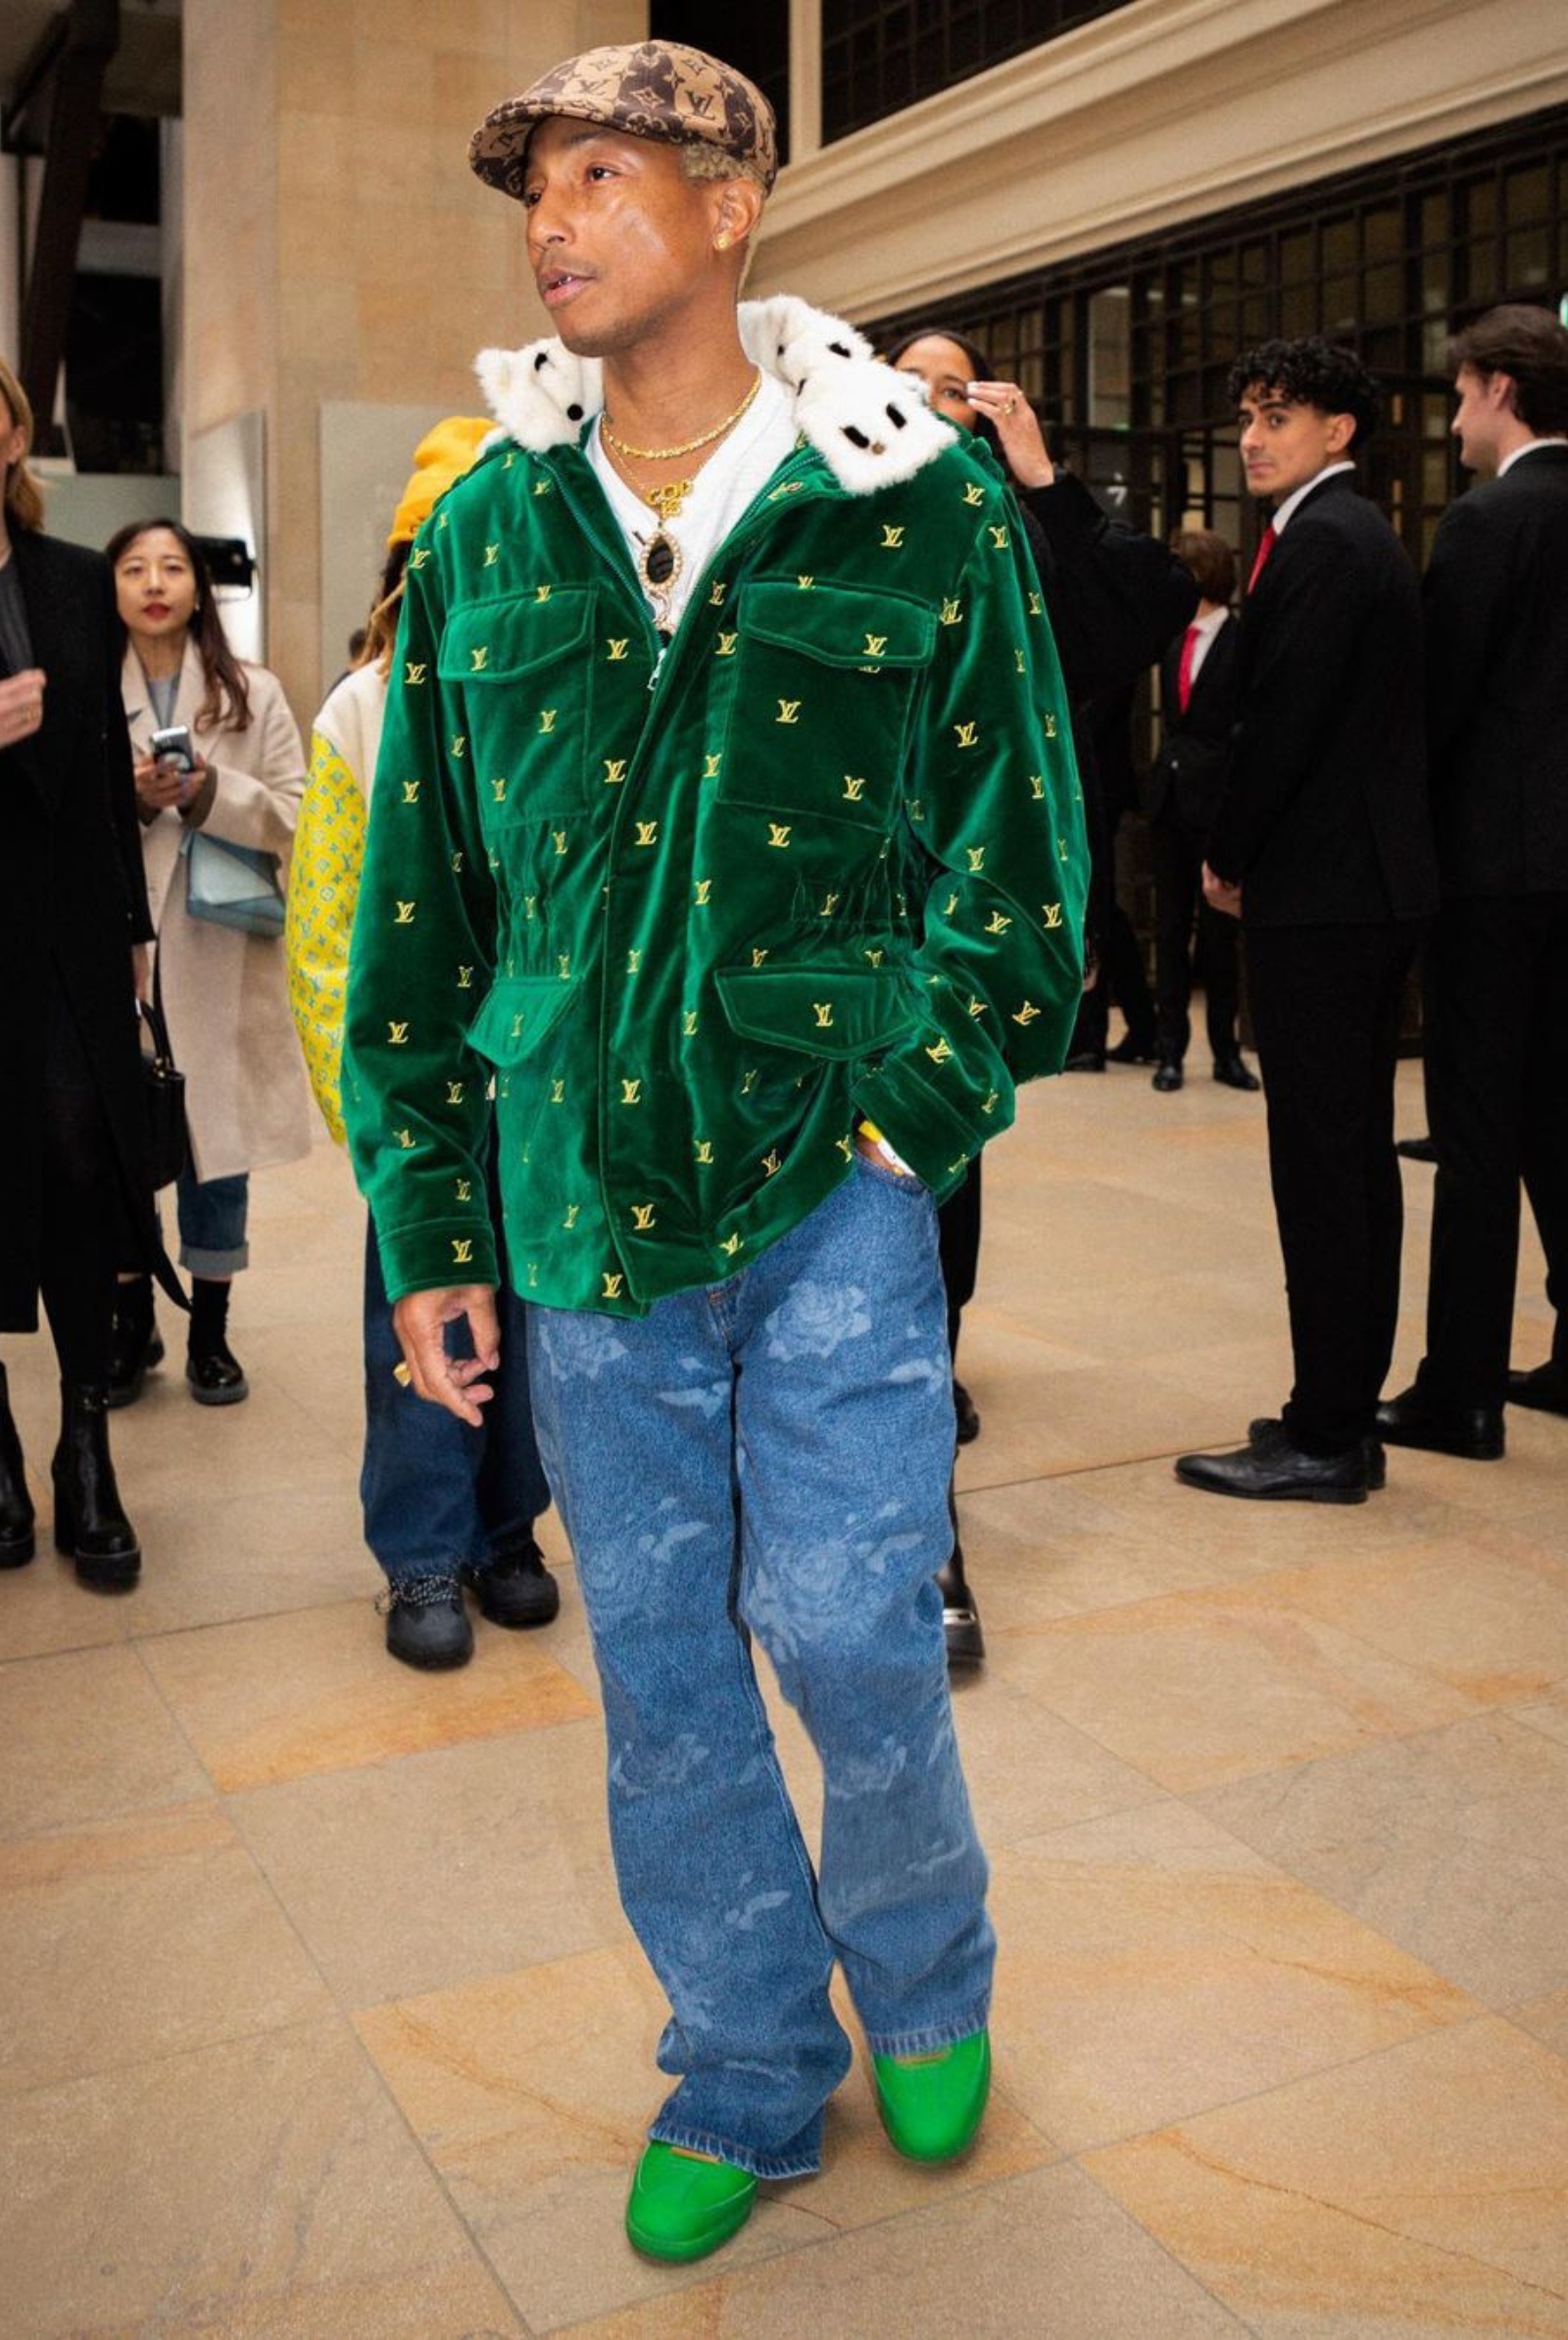 10 Best Dressed Men at Paris Fashion Week - Pharrell